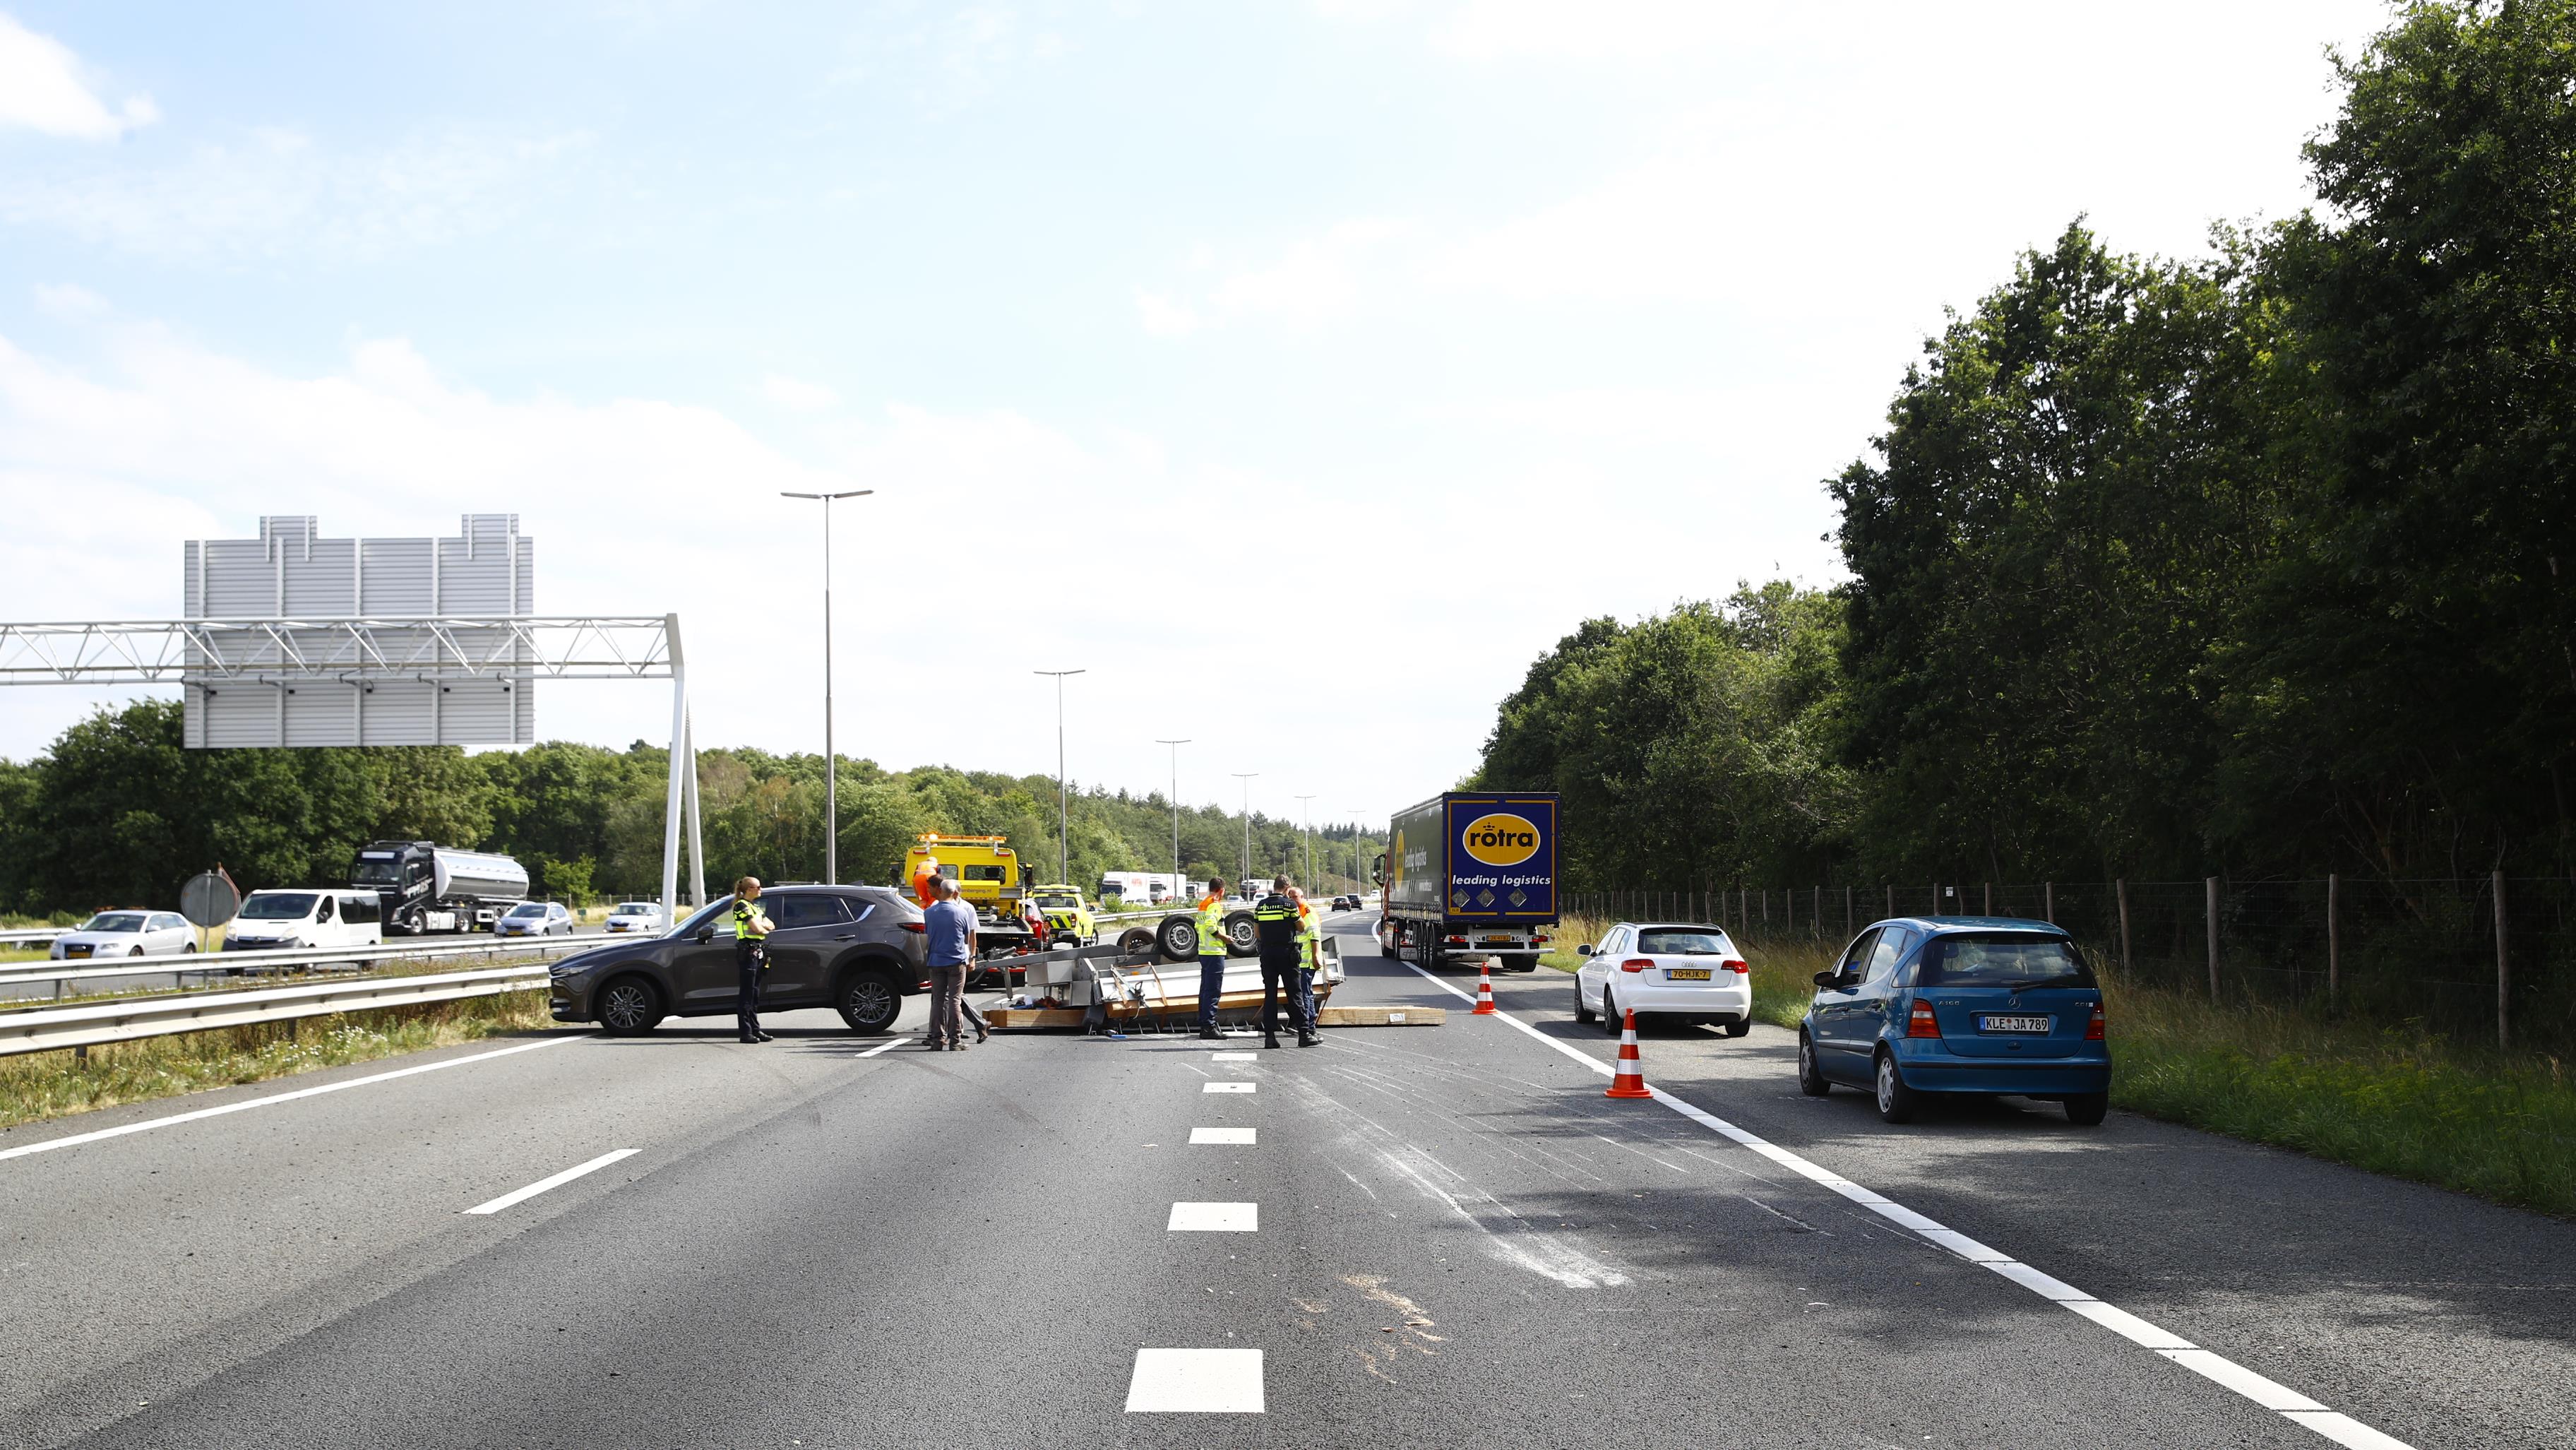 A50 tussen Zwolle en Apeldoorn weer vrij na ongeluk.